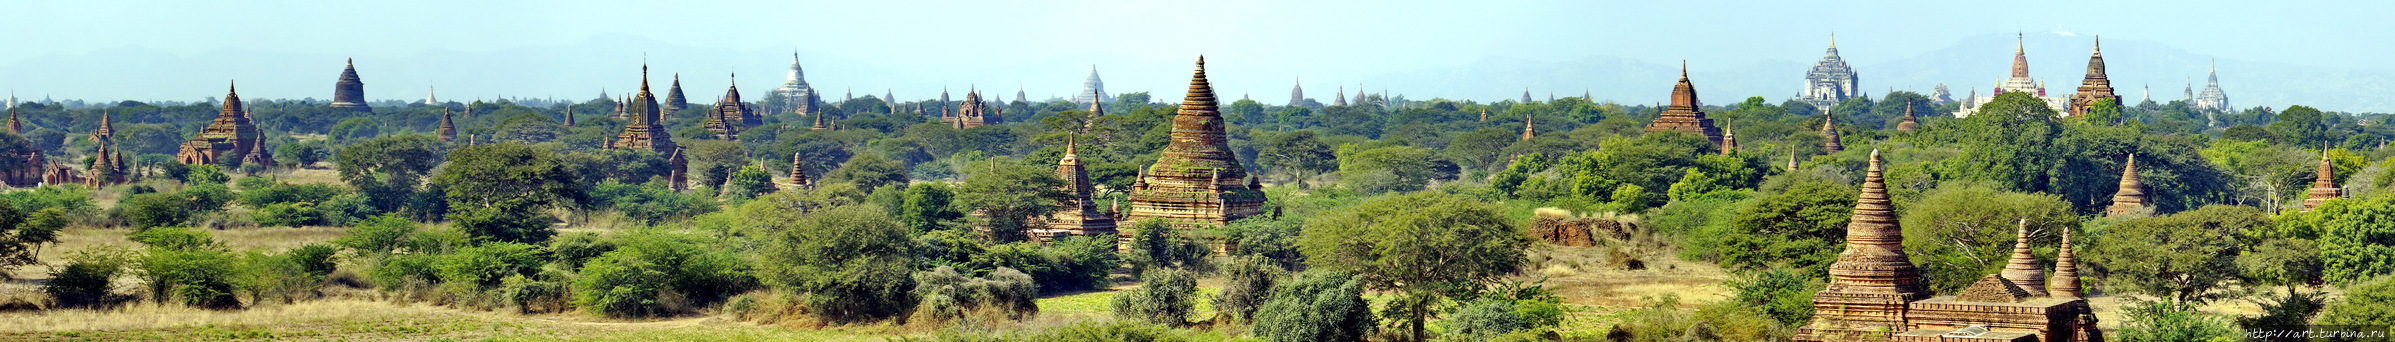 Храмов и ступ здесь несколько тысяч Баган, Мьянма